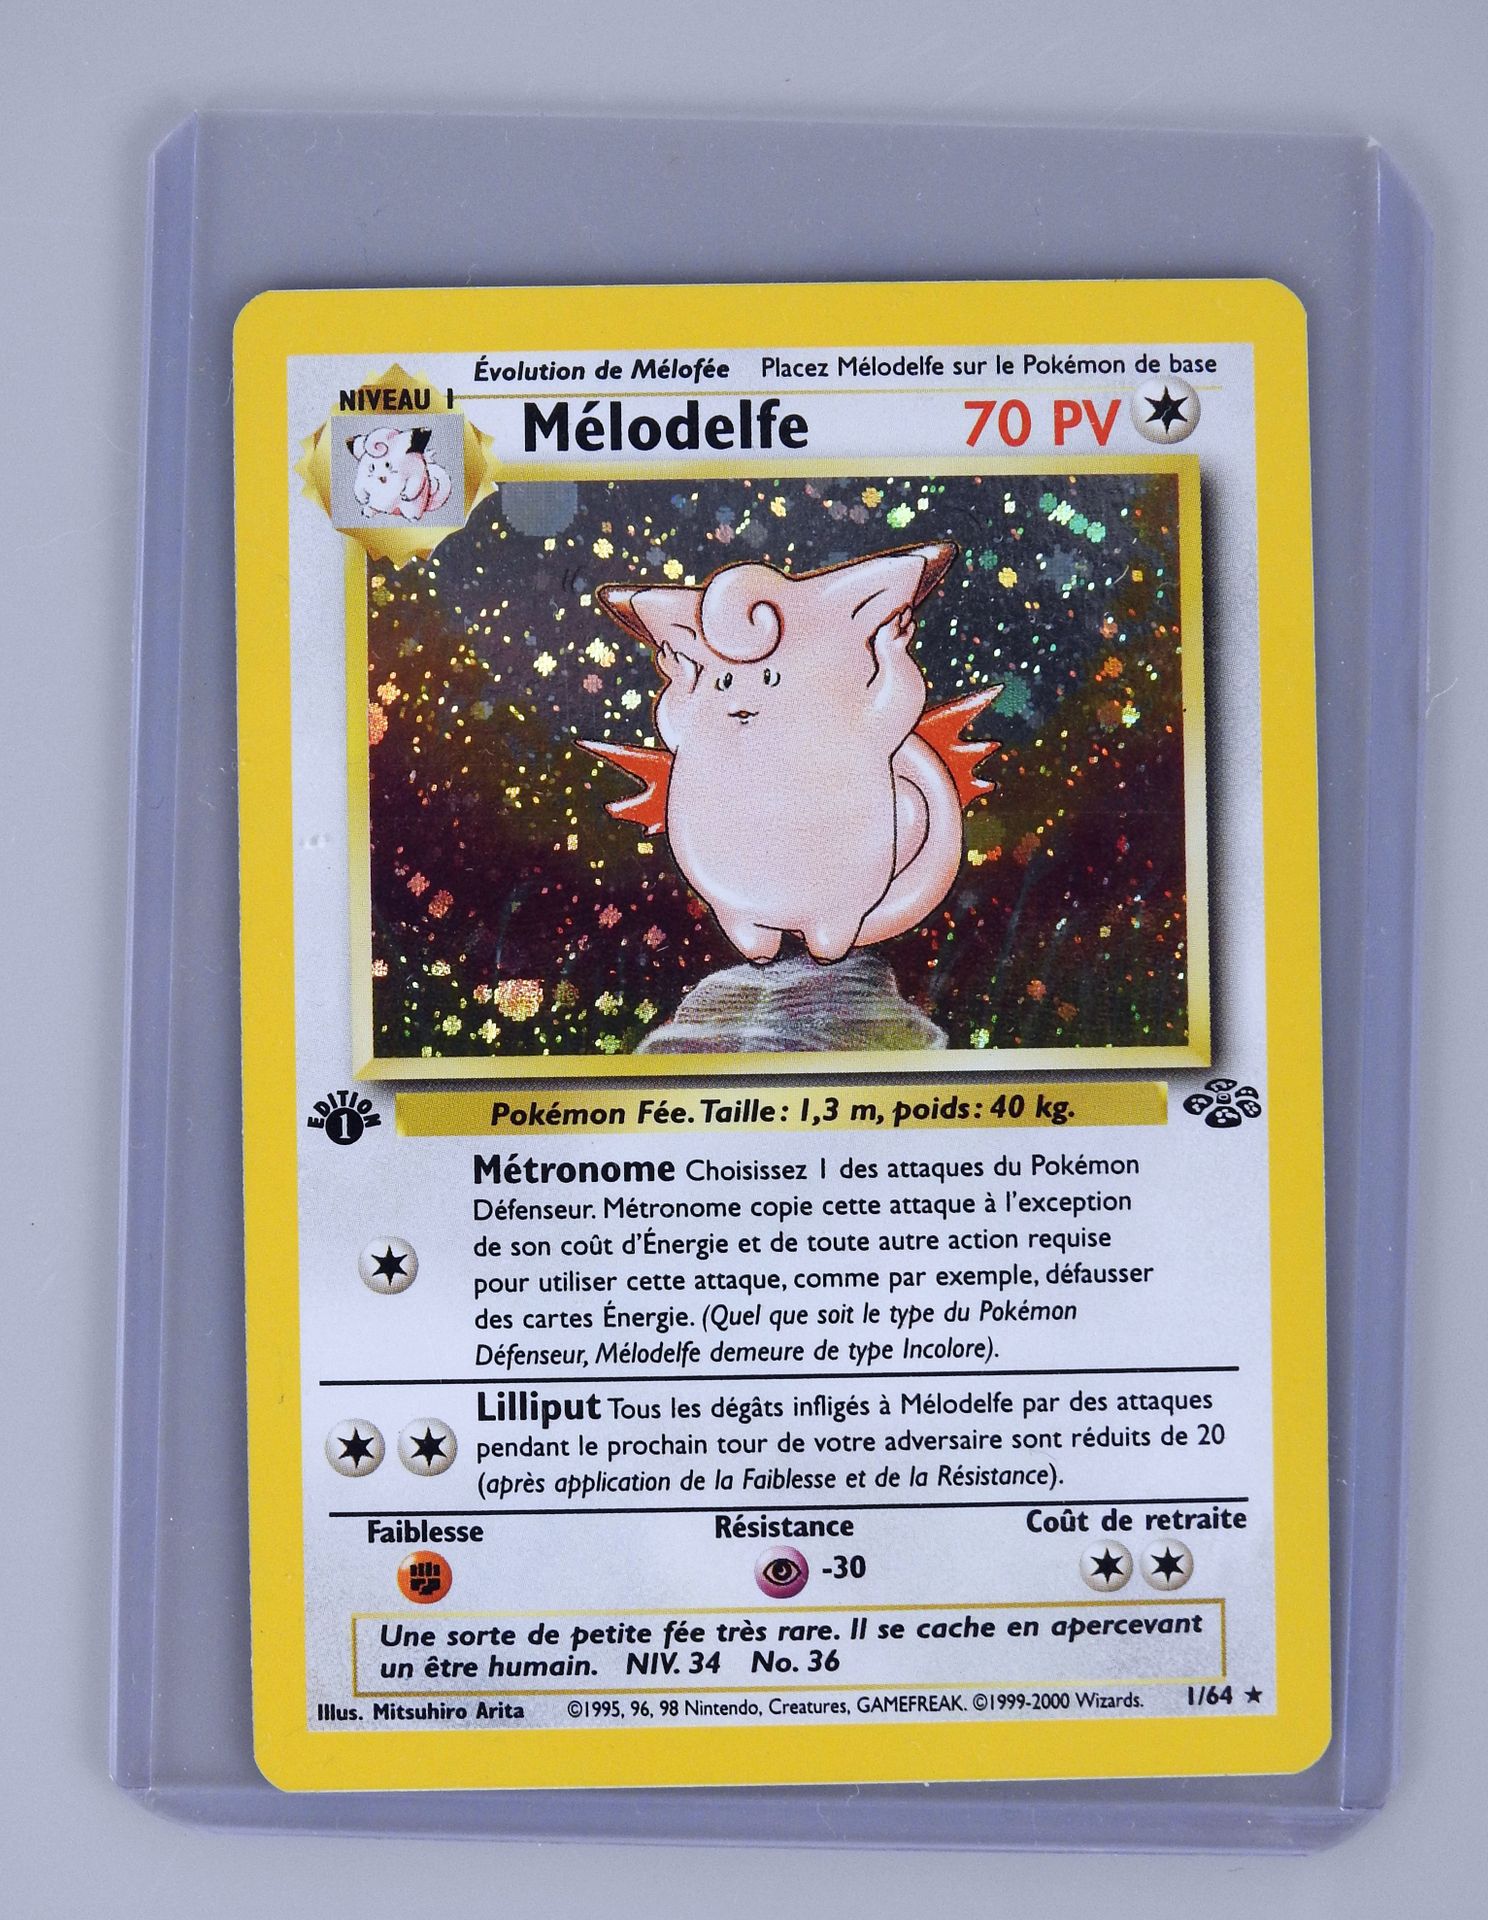 Null MELODELFE Ed 1

Wizards Dschungelblock 1/64

Pokémon-Karte in hervorragende&hellip;